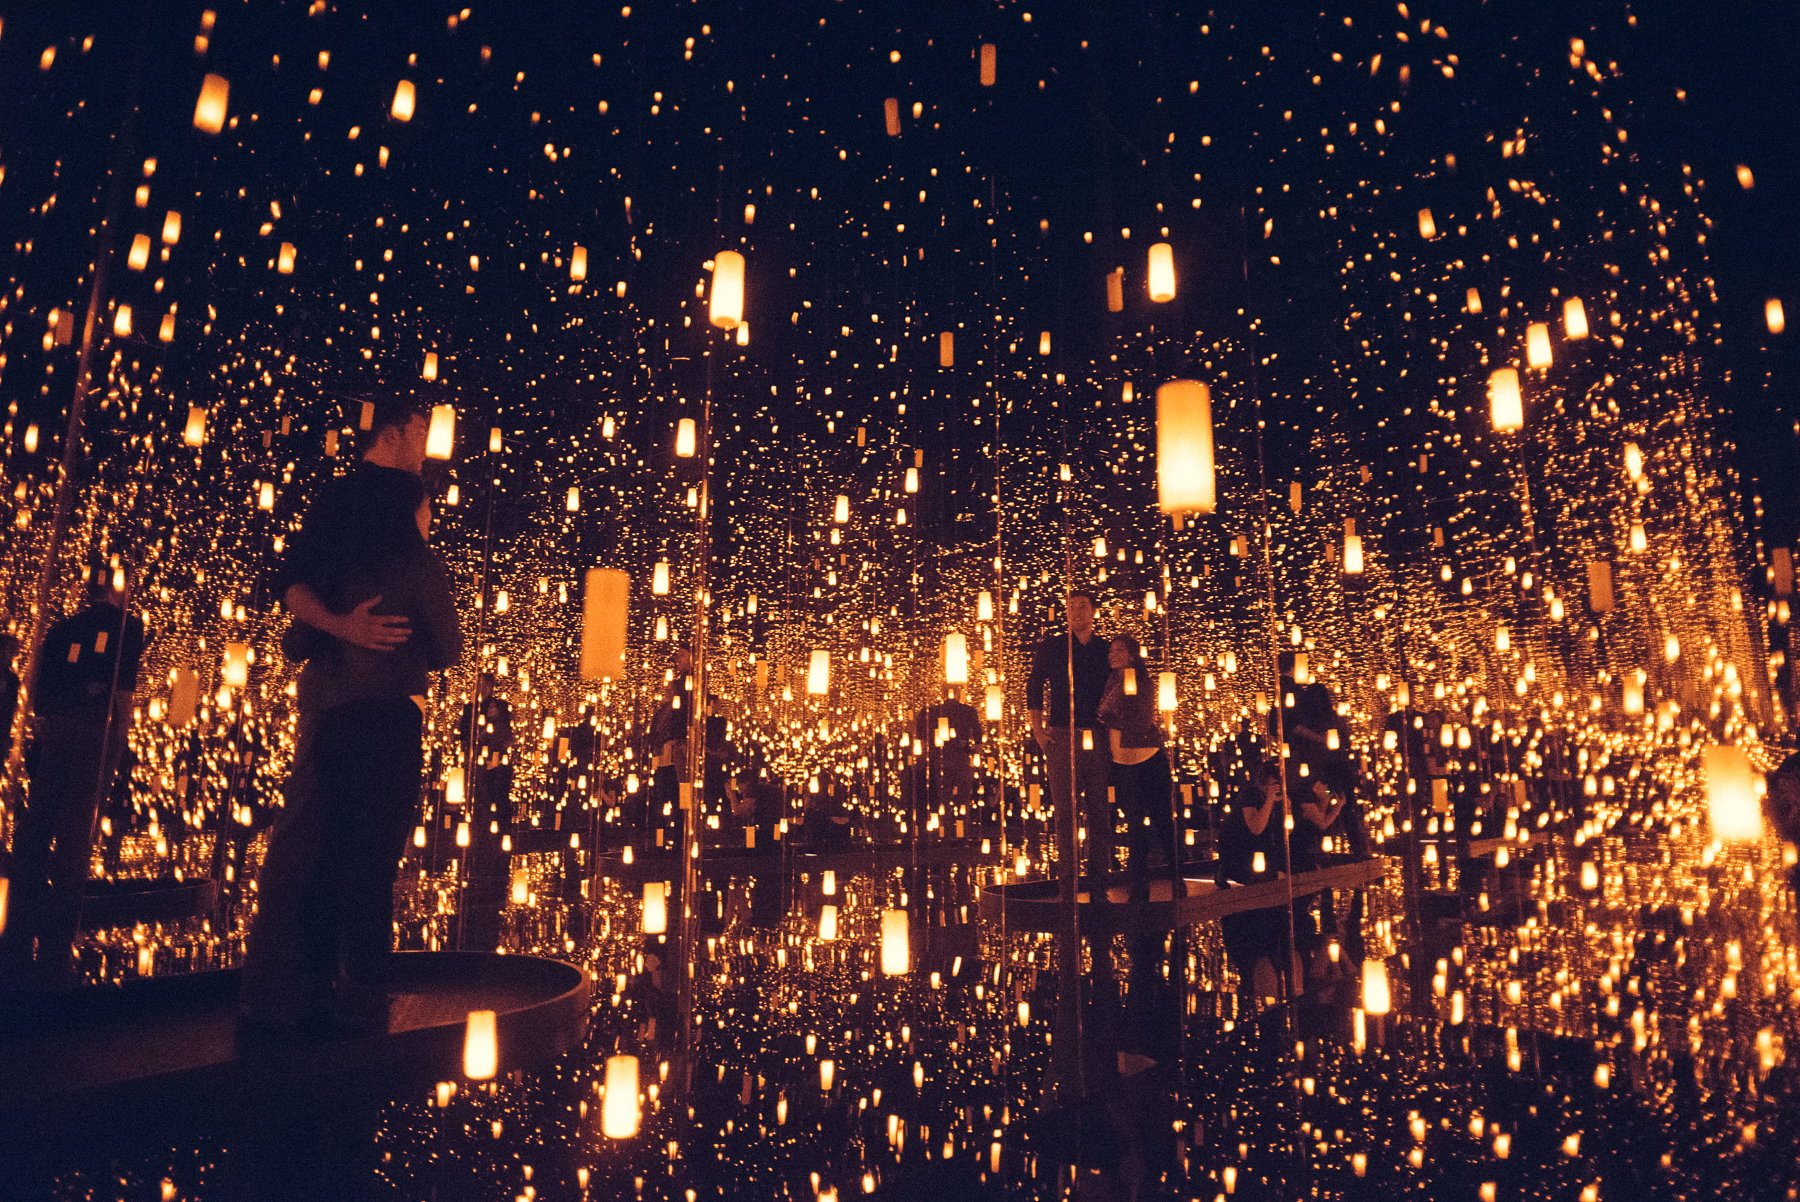 AJ Jan Yayoi Kusama Infinity Mirrors Proposal Engagement Photoshoot